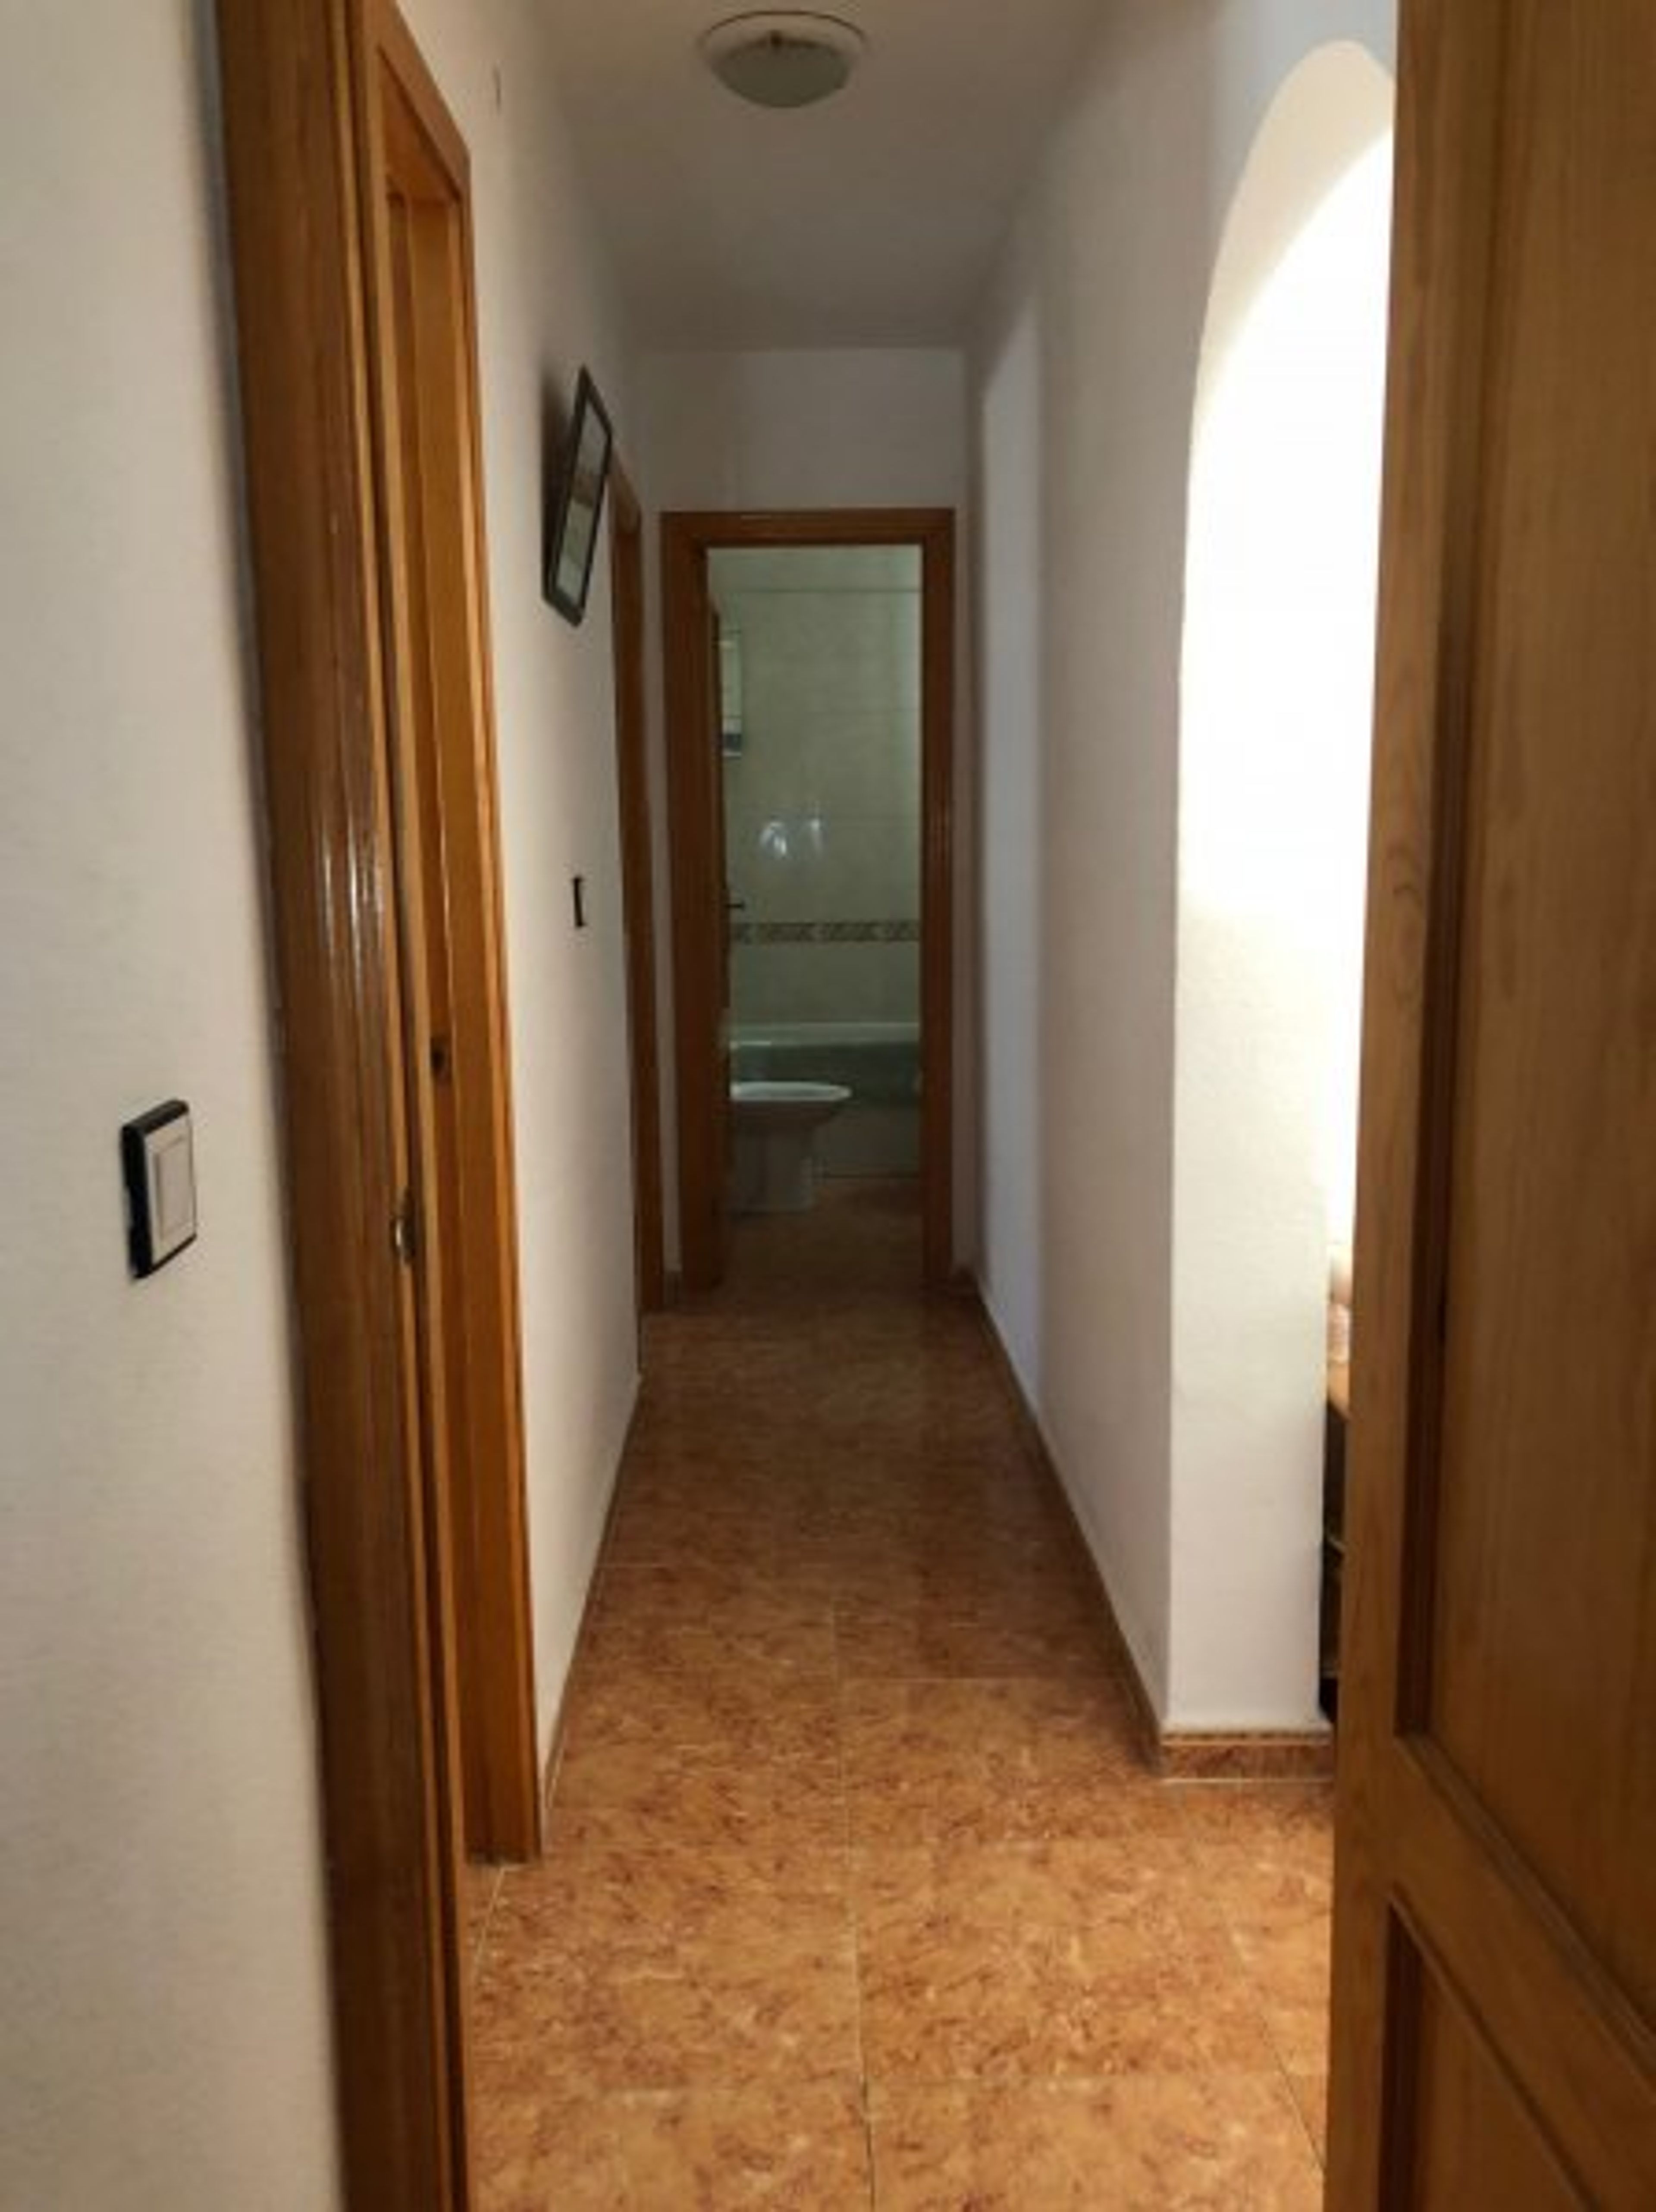 Hallway to bedrooms/bathroom